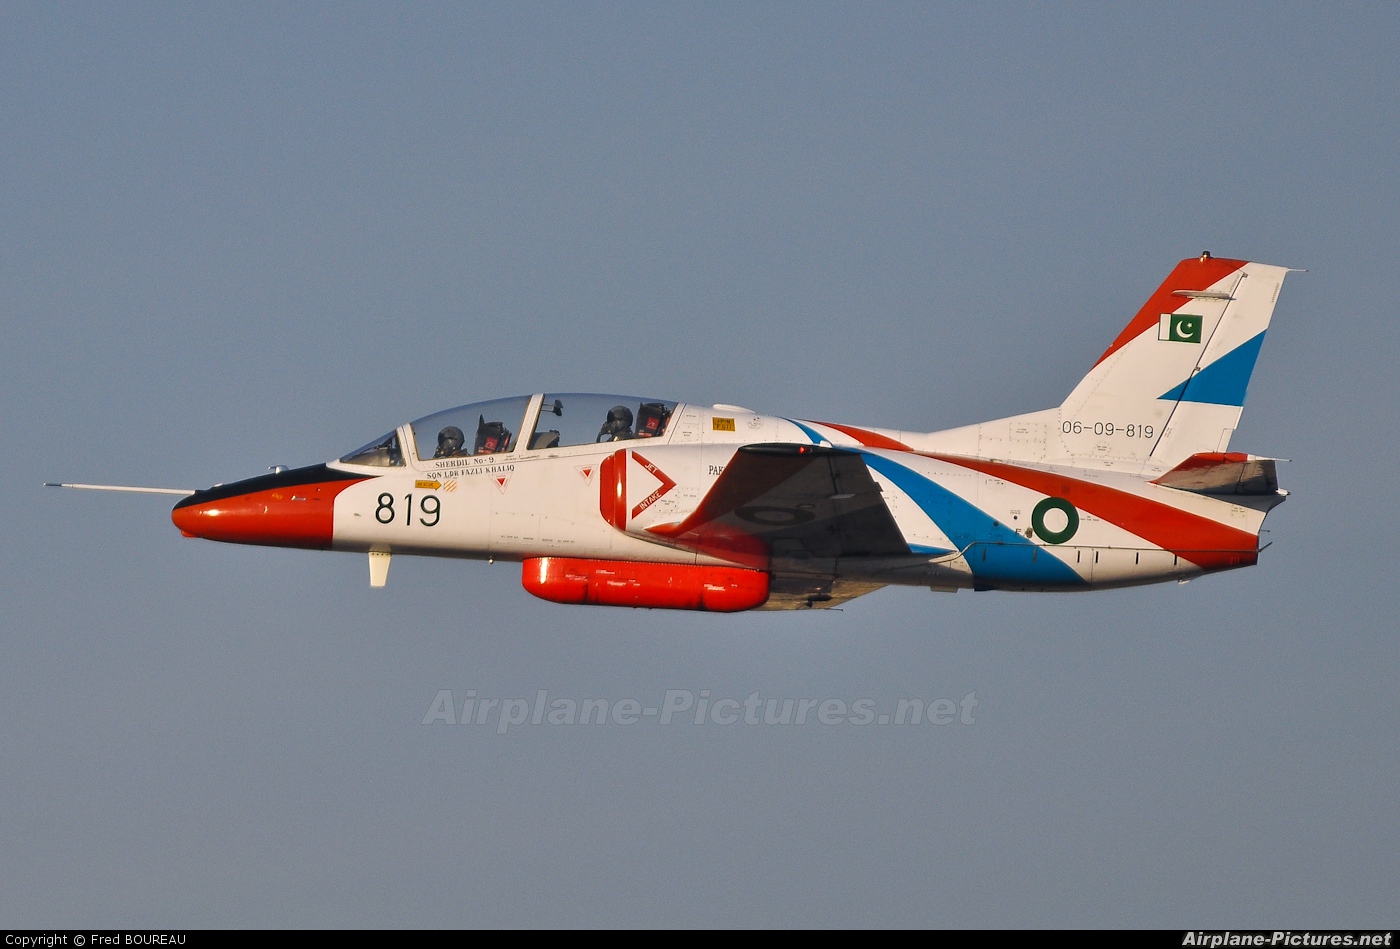 Pakistan - Air Force 06-09-819 aircraft at Dubai Intl